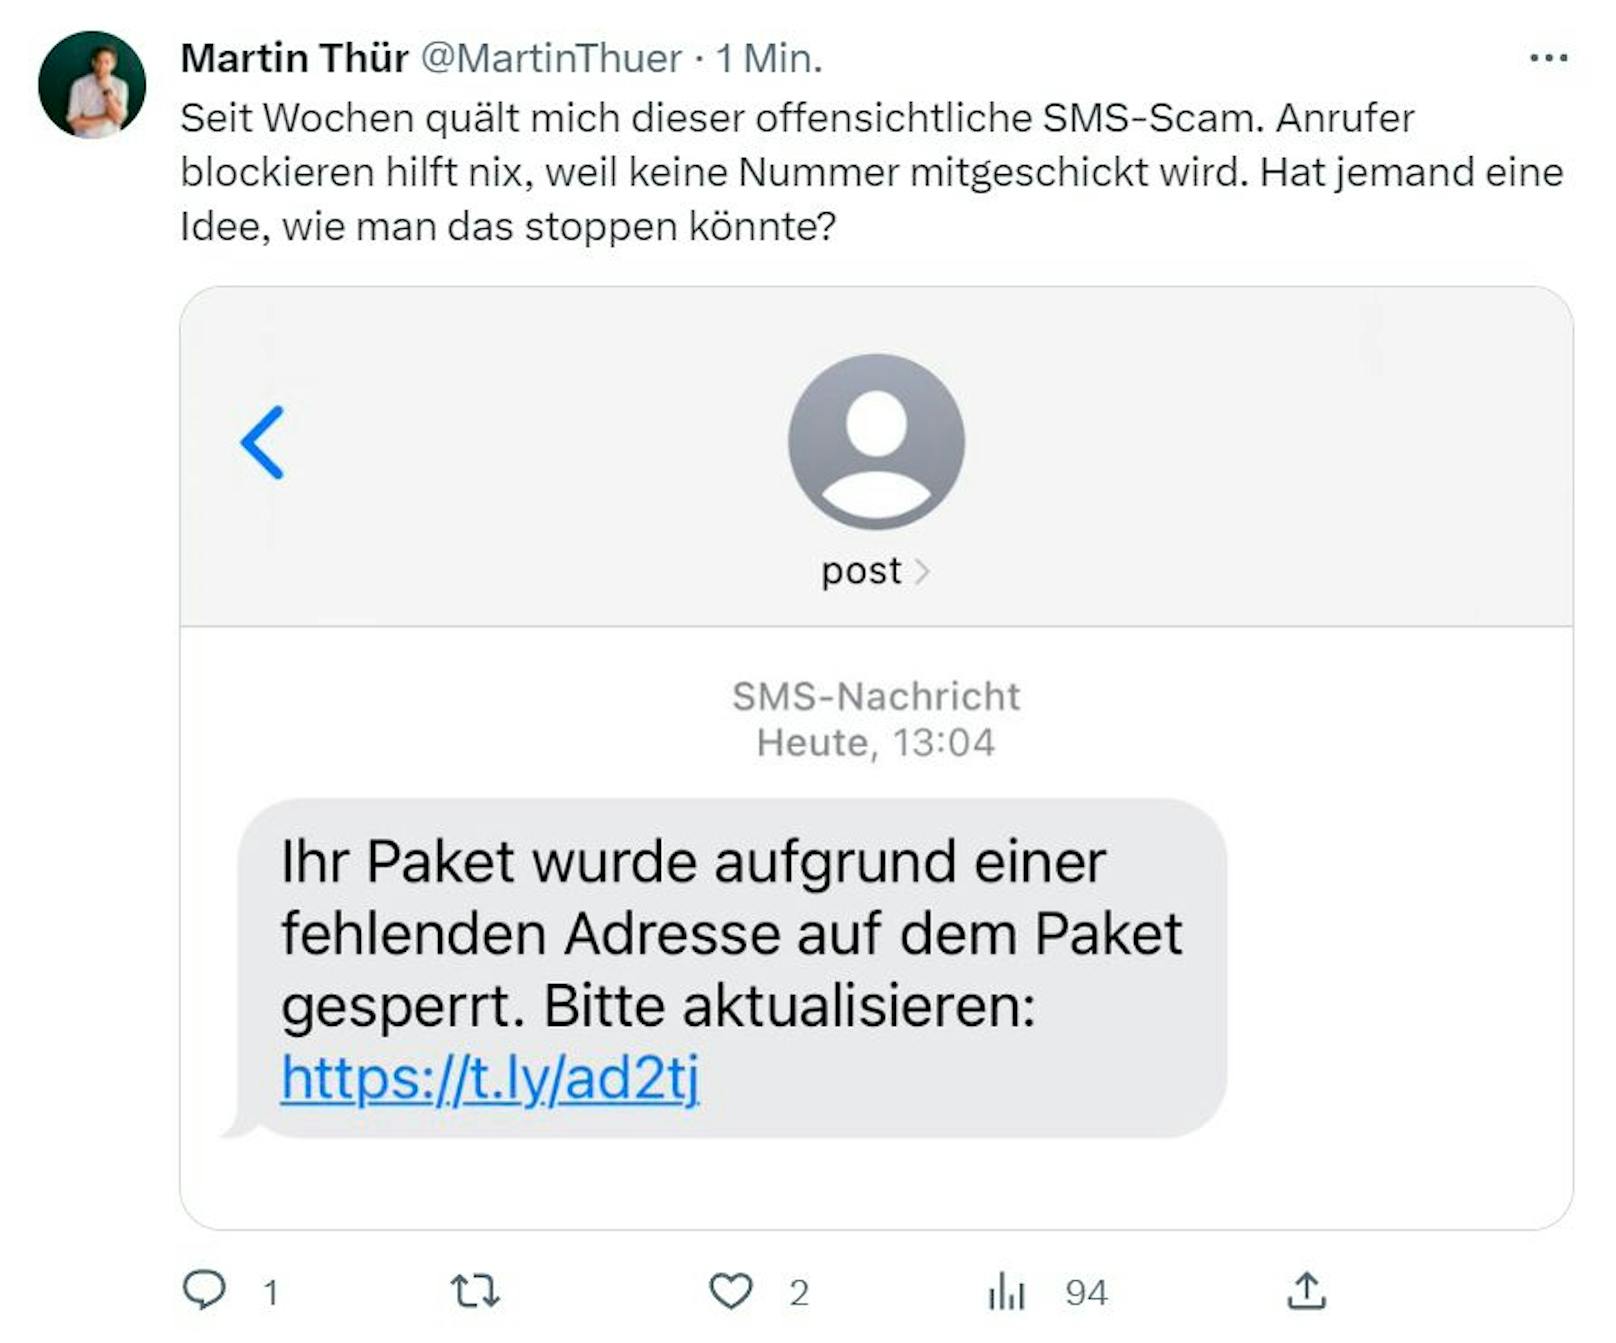 Martin Thür wird zusätzlich selbst von Betrügern heimgesucht: "Seit Wochen quält mich dieser offensichtliche SMS-Scam. <a target="_blank" data-li-document-ref="100282333" href="https://www.heute.at/g/seit-wochen-orf-star-nun-zielscheibe-fuer-betruege-100282333">Anrufer blockieren hilft nix".</a>